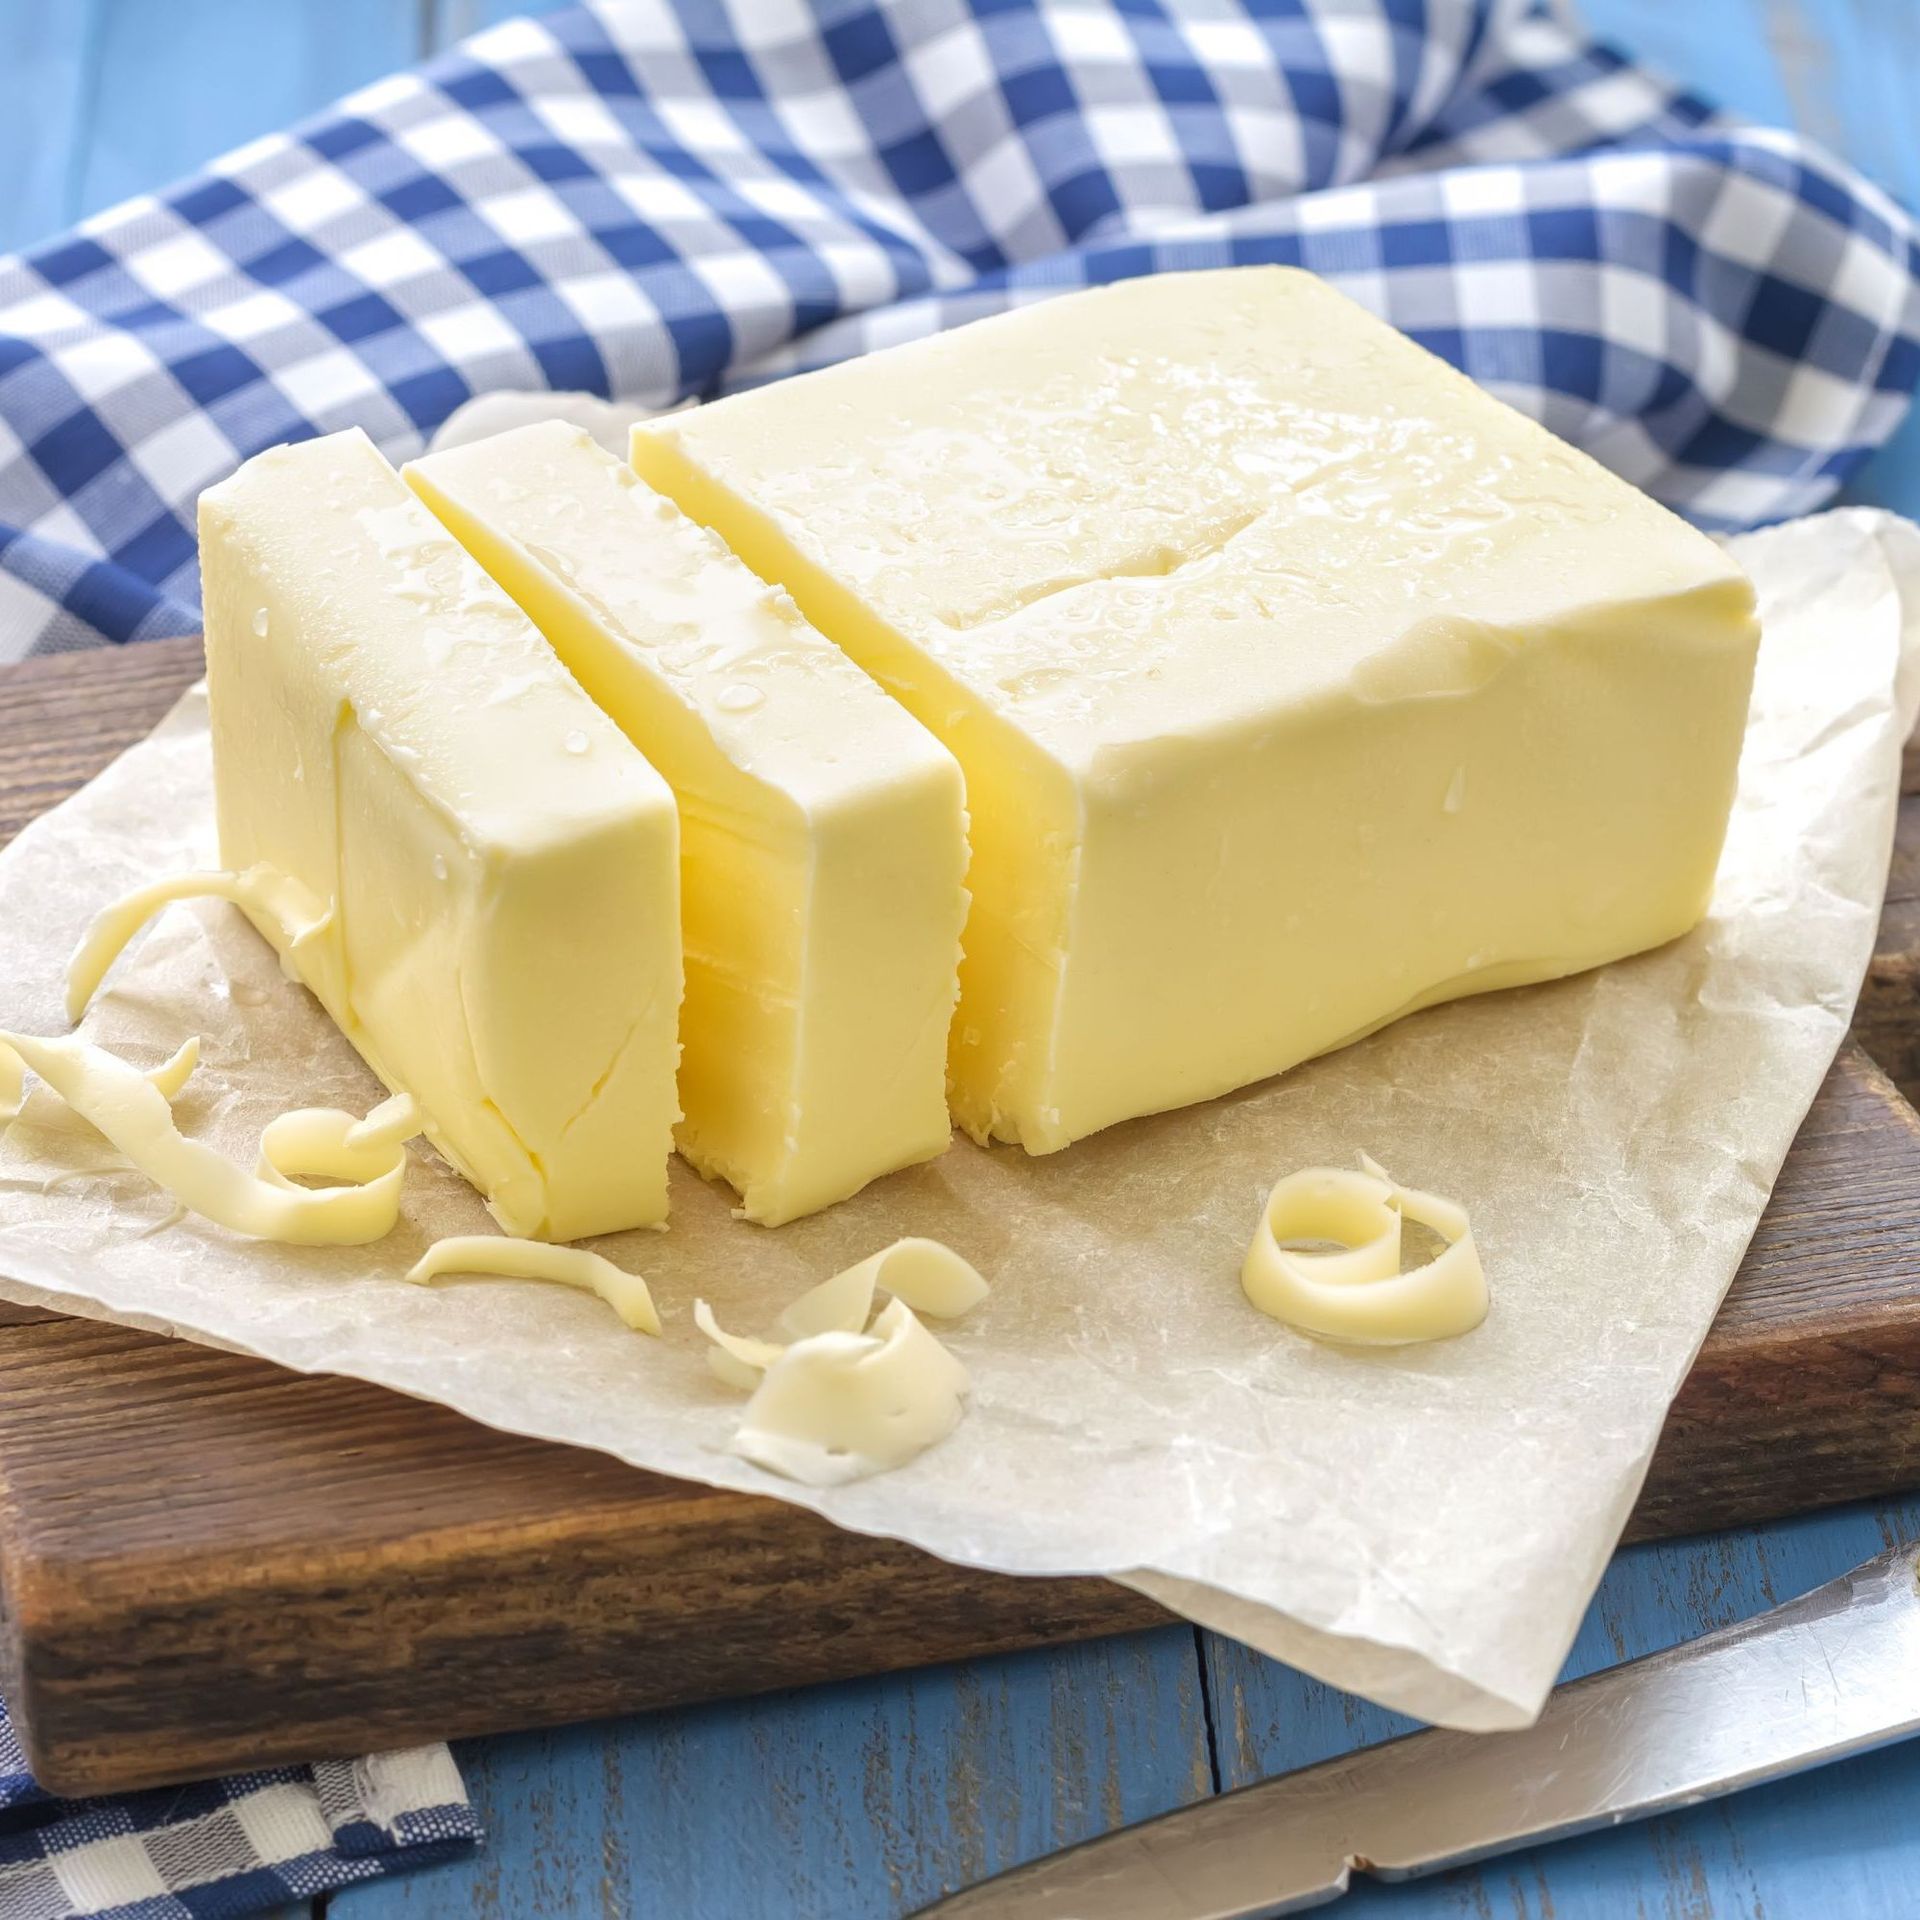 Le beurre clarifié: ses avantages et mode d'emploi 